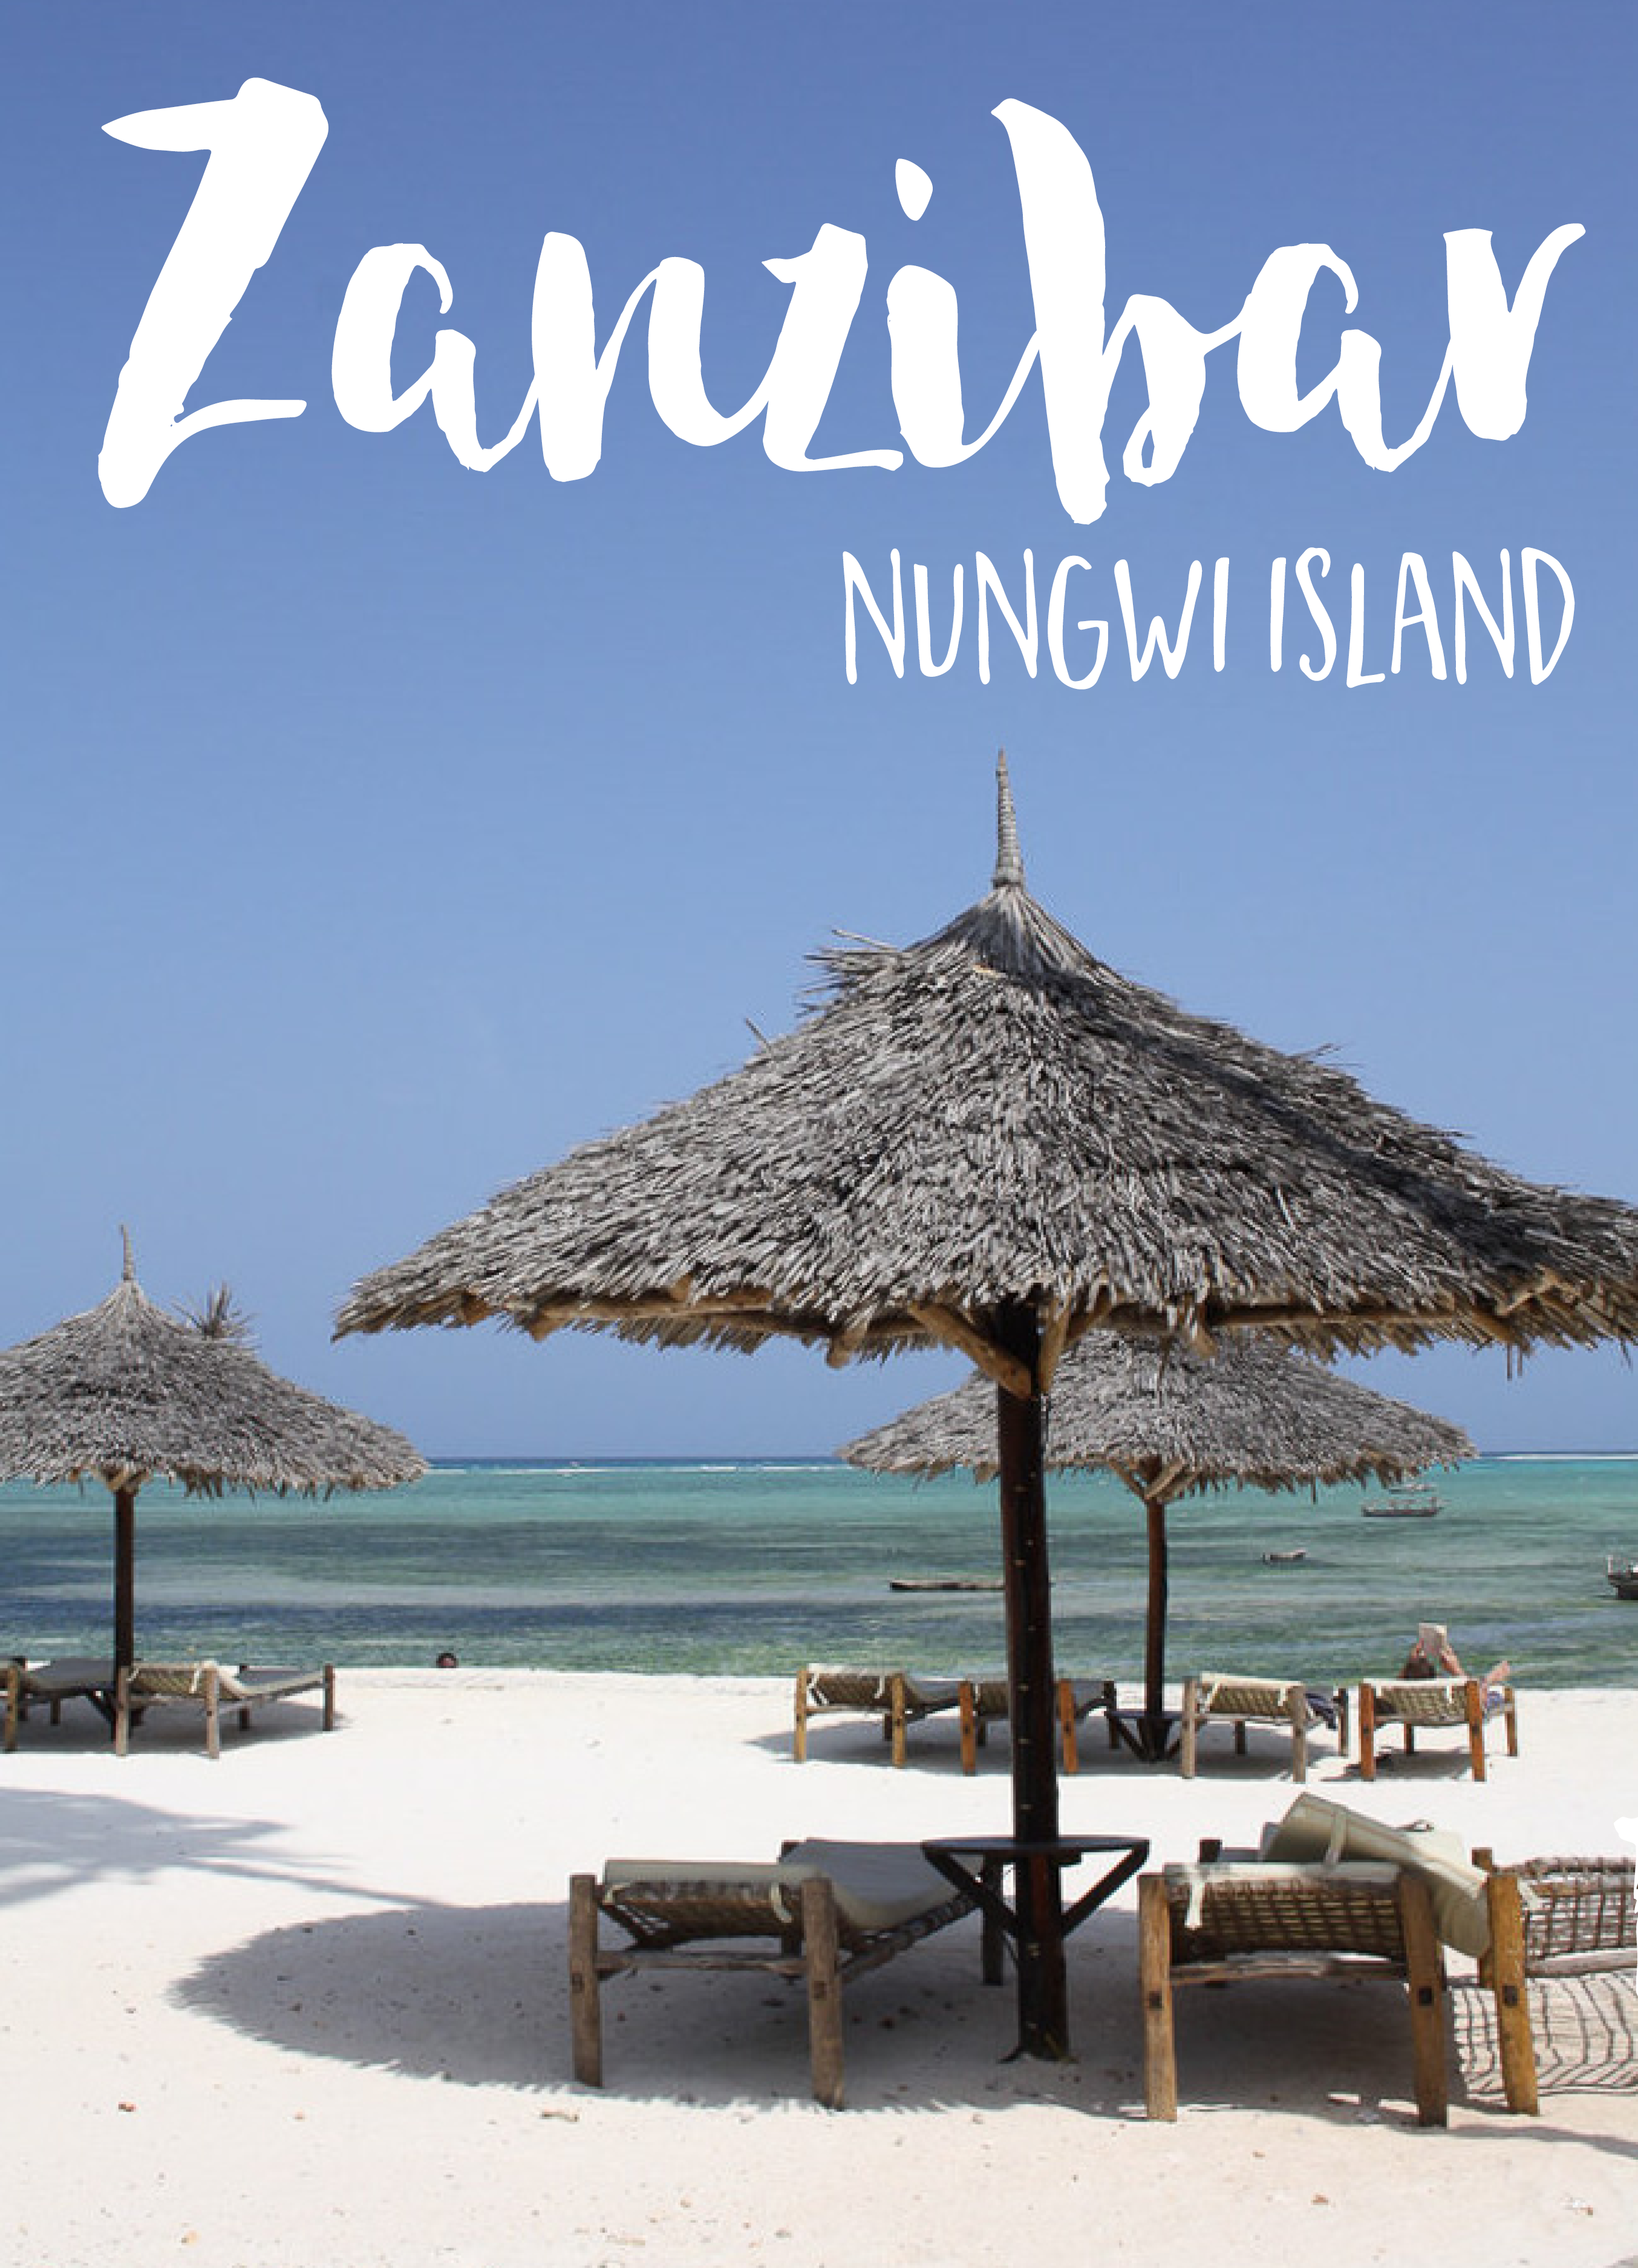 Nungwi Island Zanzibar Beach